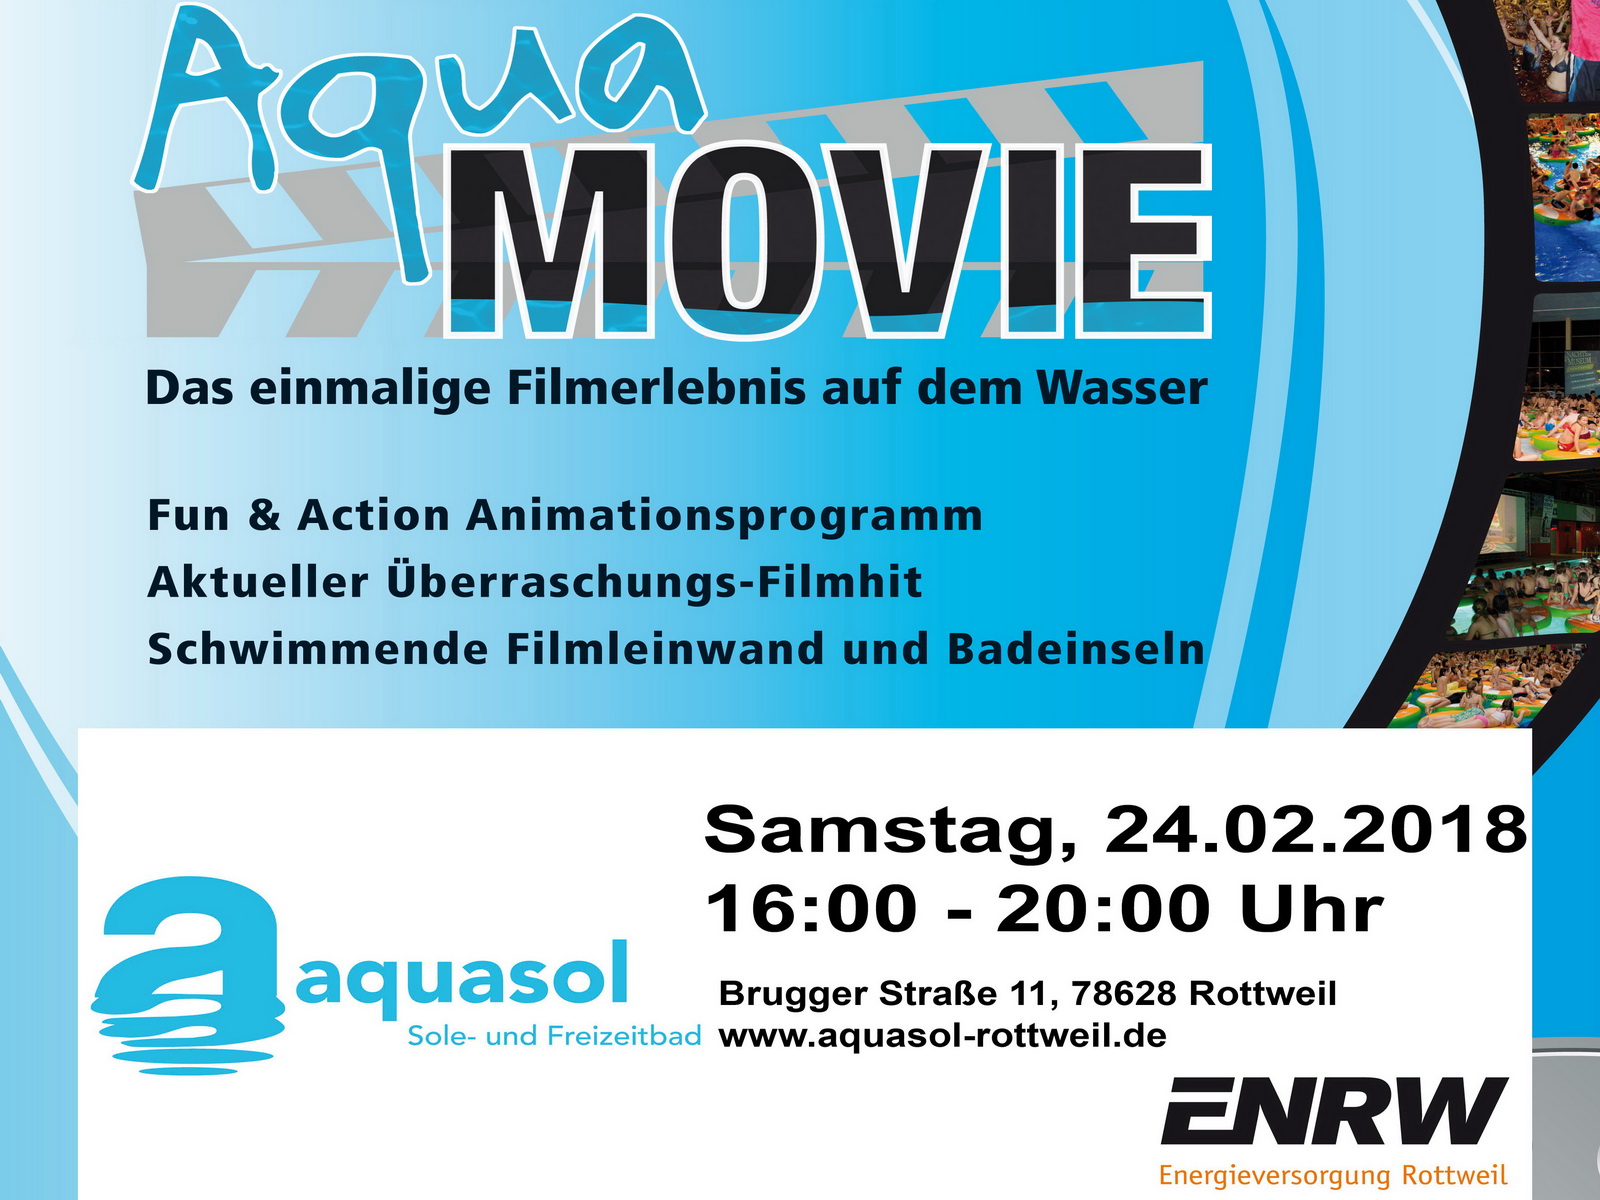 Plakat Aqua Movie im aquasol